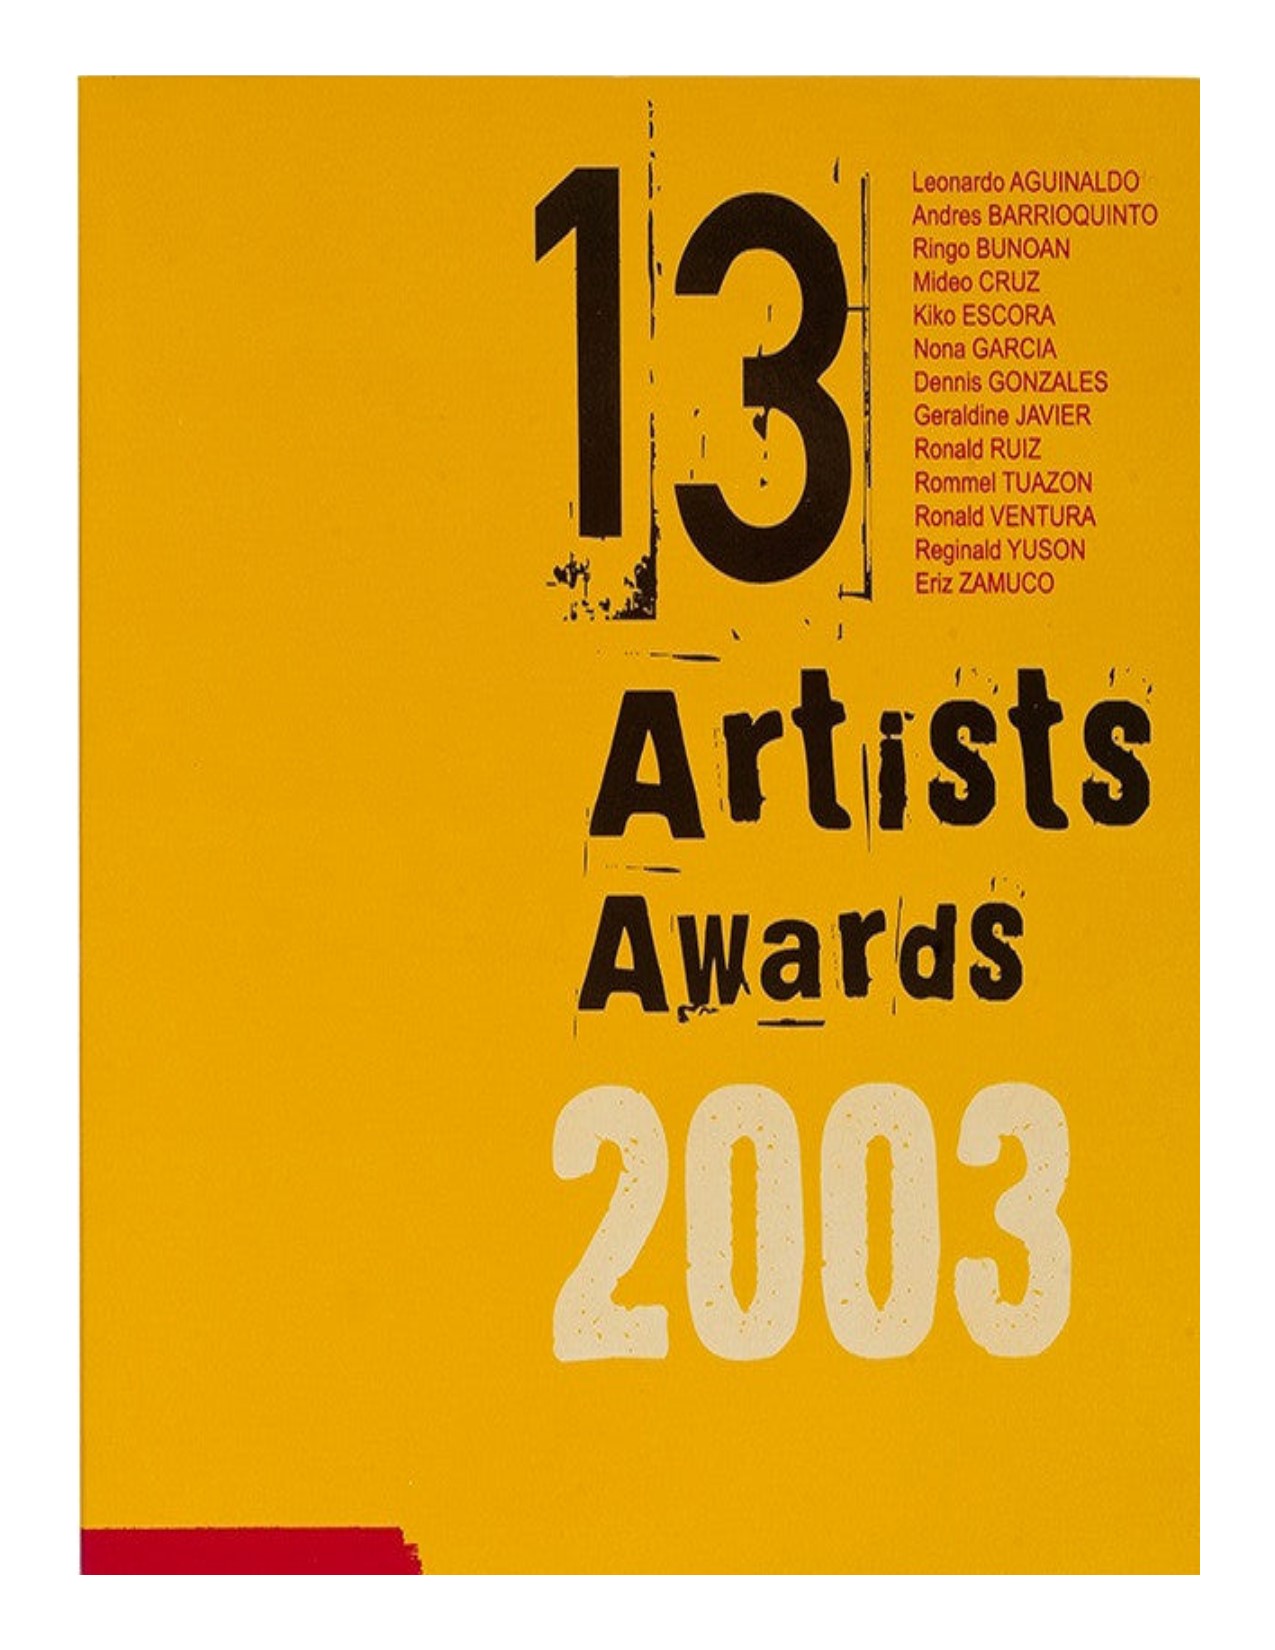 13 artists awards 2003